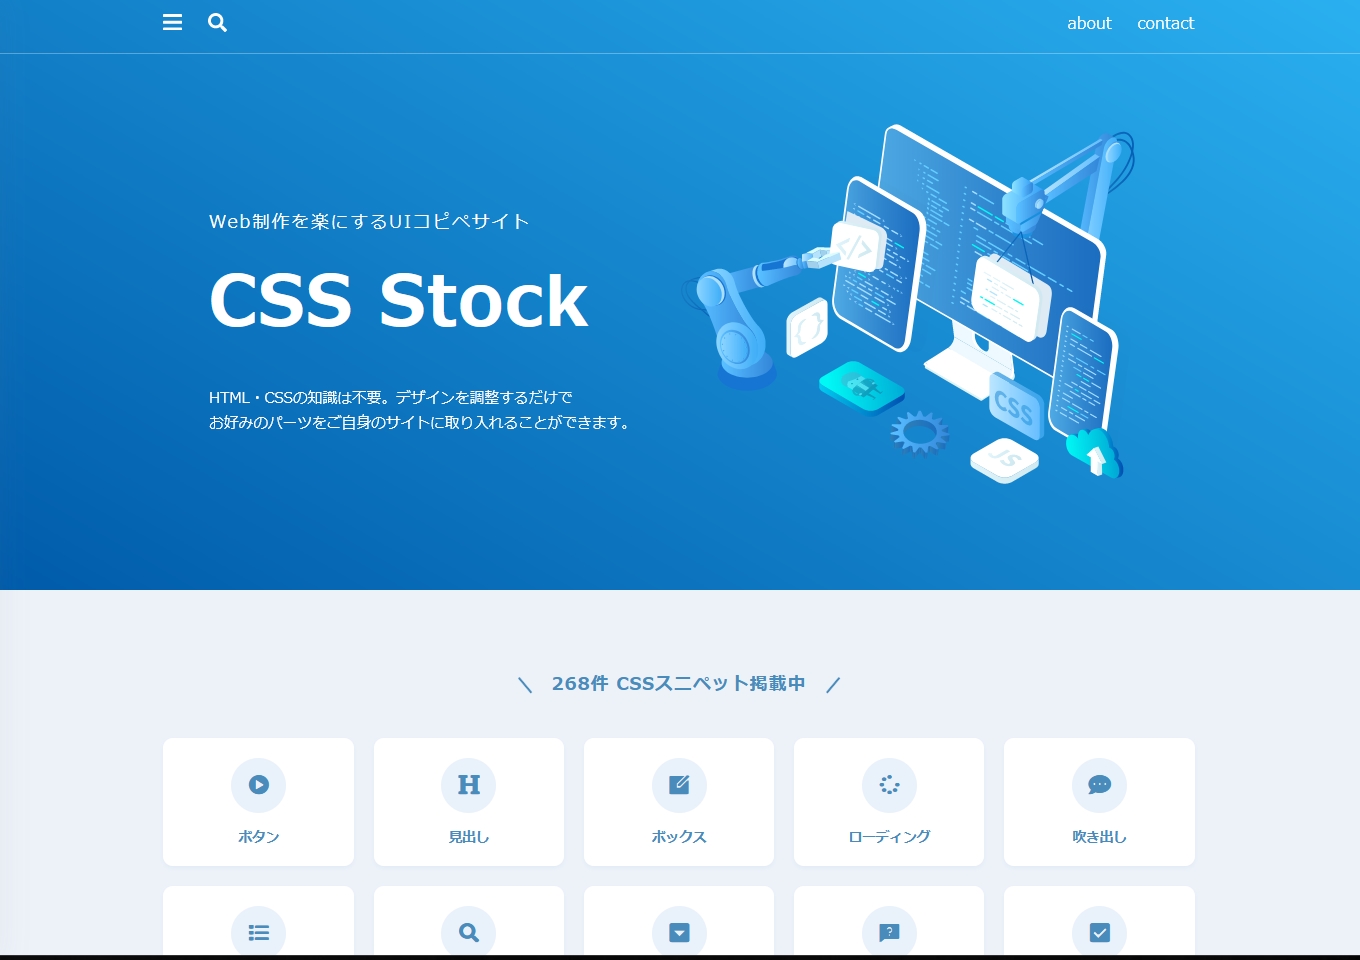 CSS Stock（CSSストック）